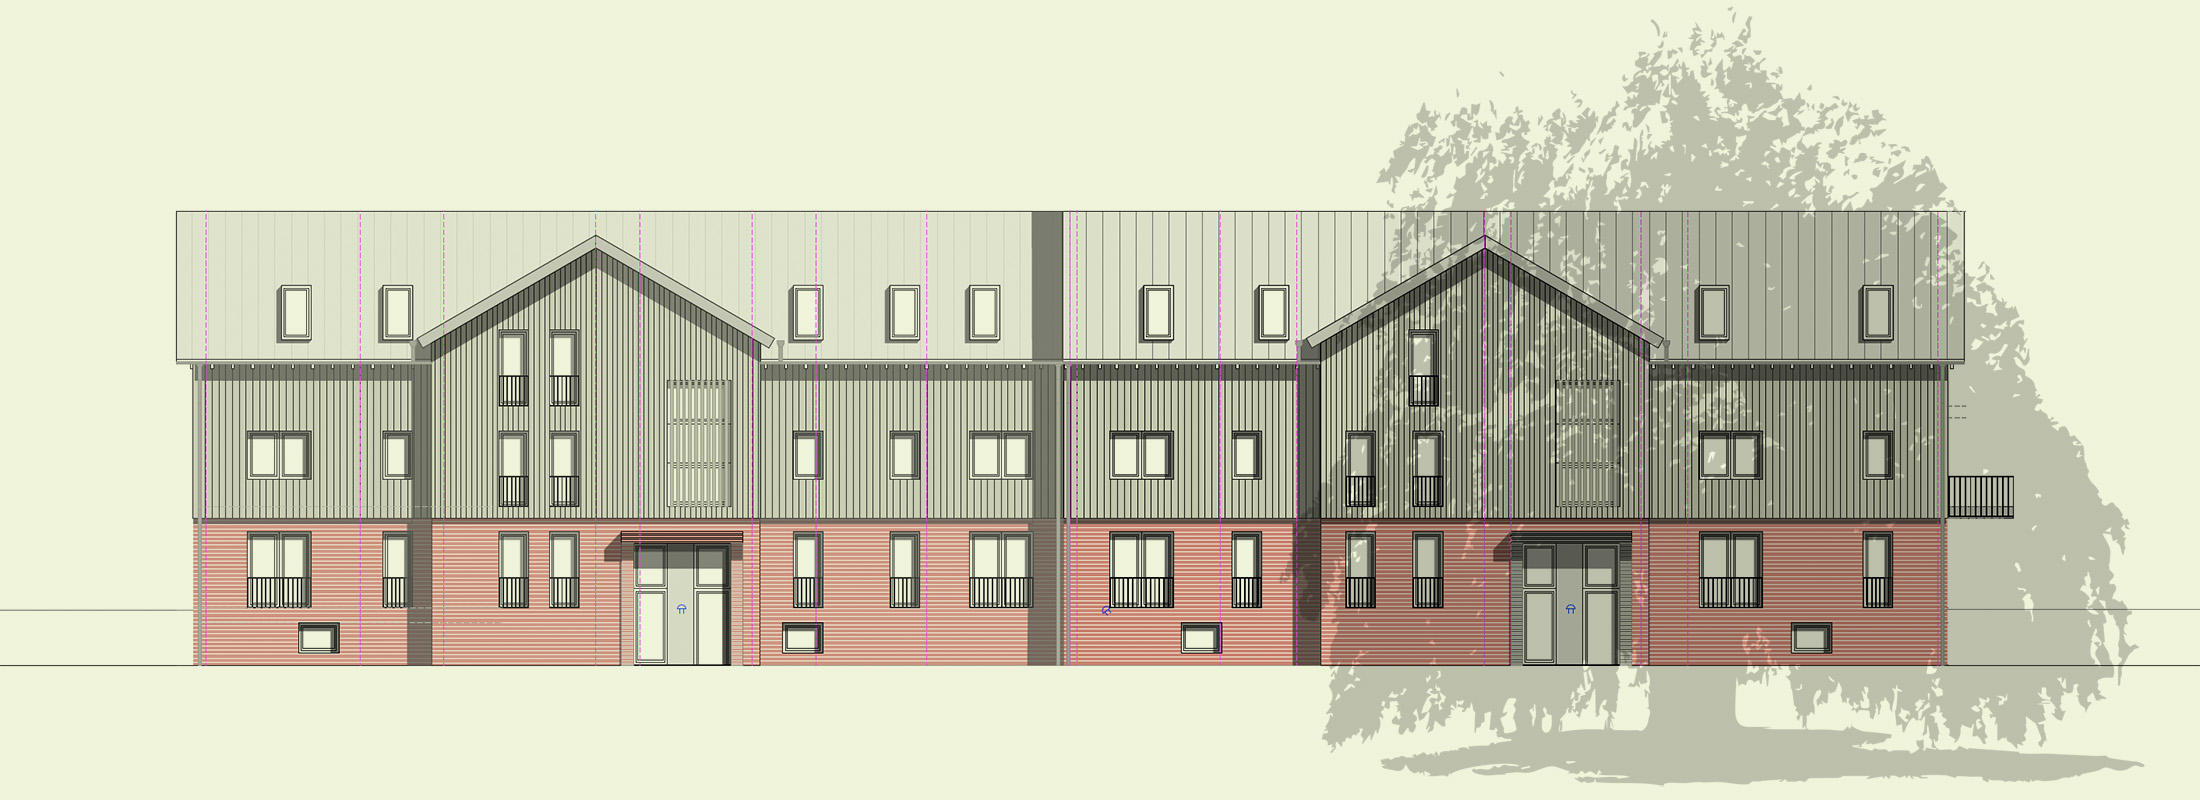 Architekturzeichnung - Diese Zeichnung zeigt ein Referenzprojekt in Schenefeld